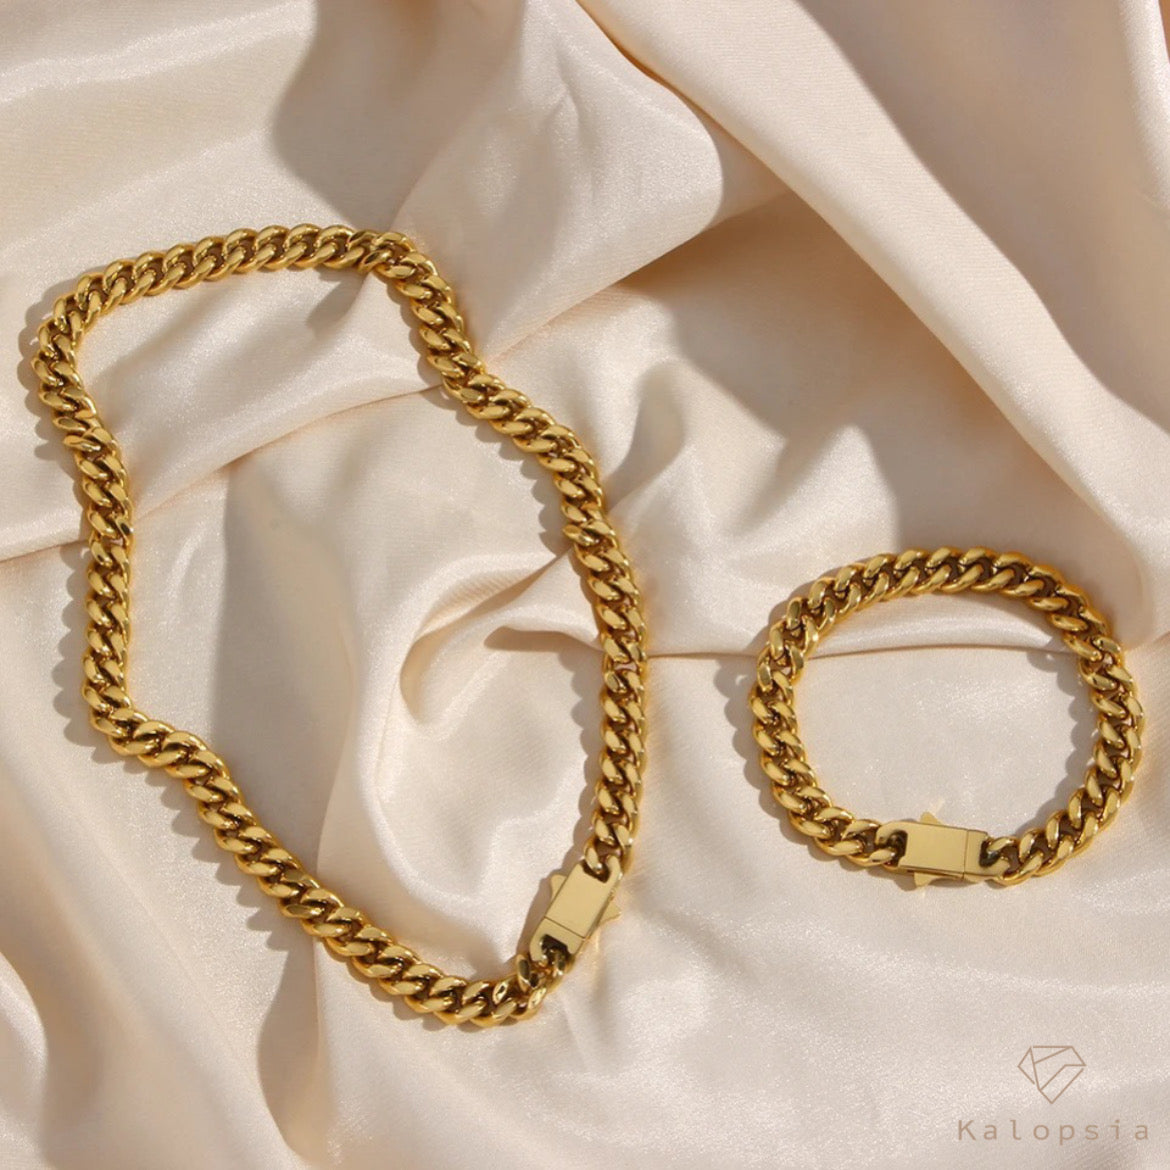 Two Tone bracelet - Kalopsia Accessories